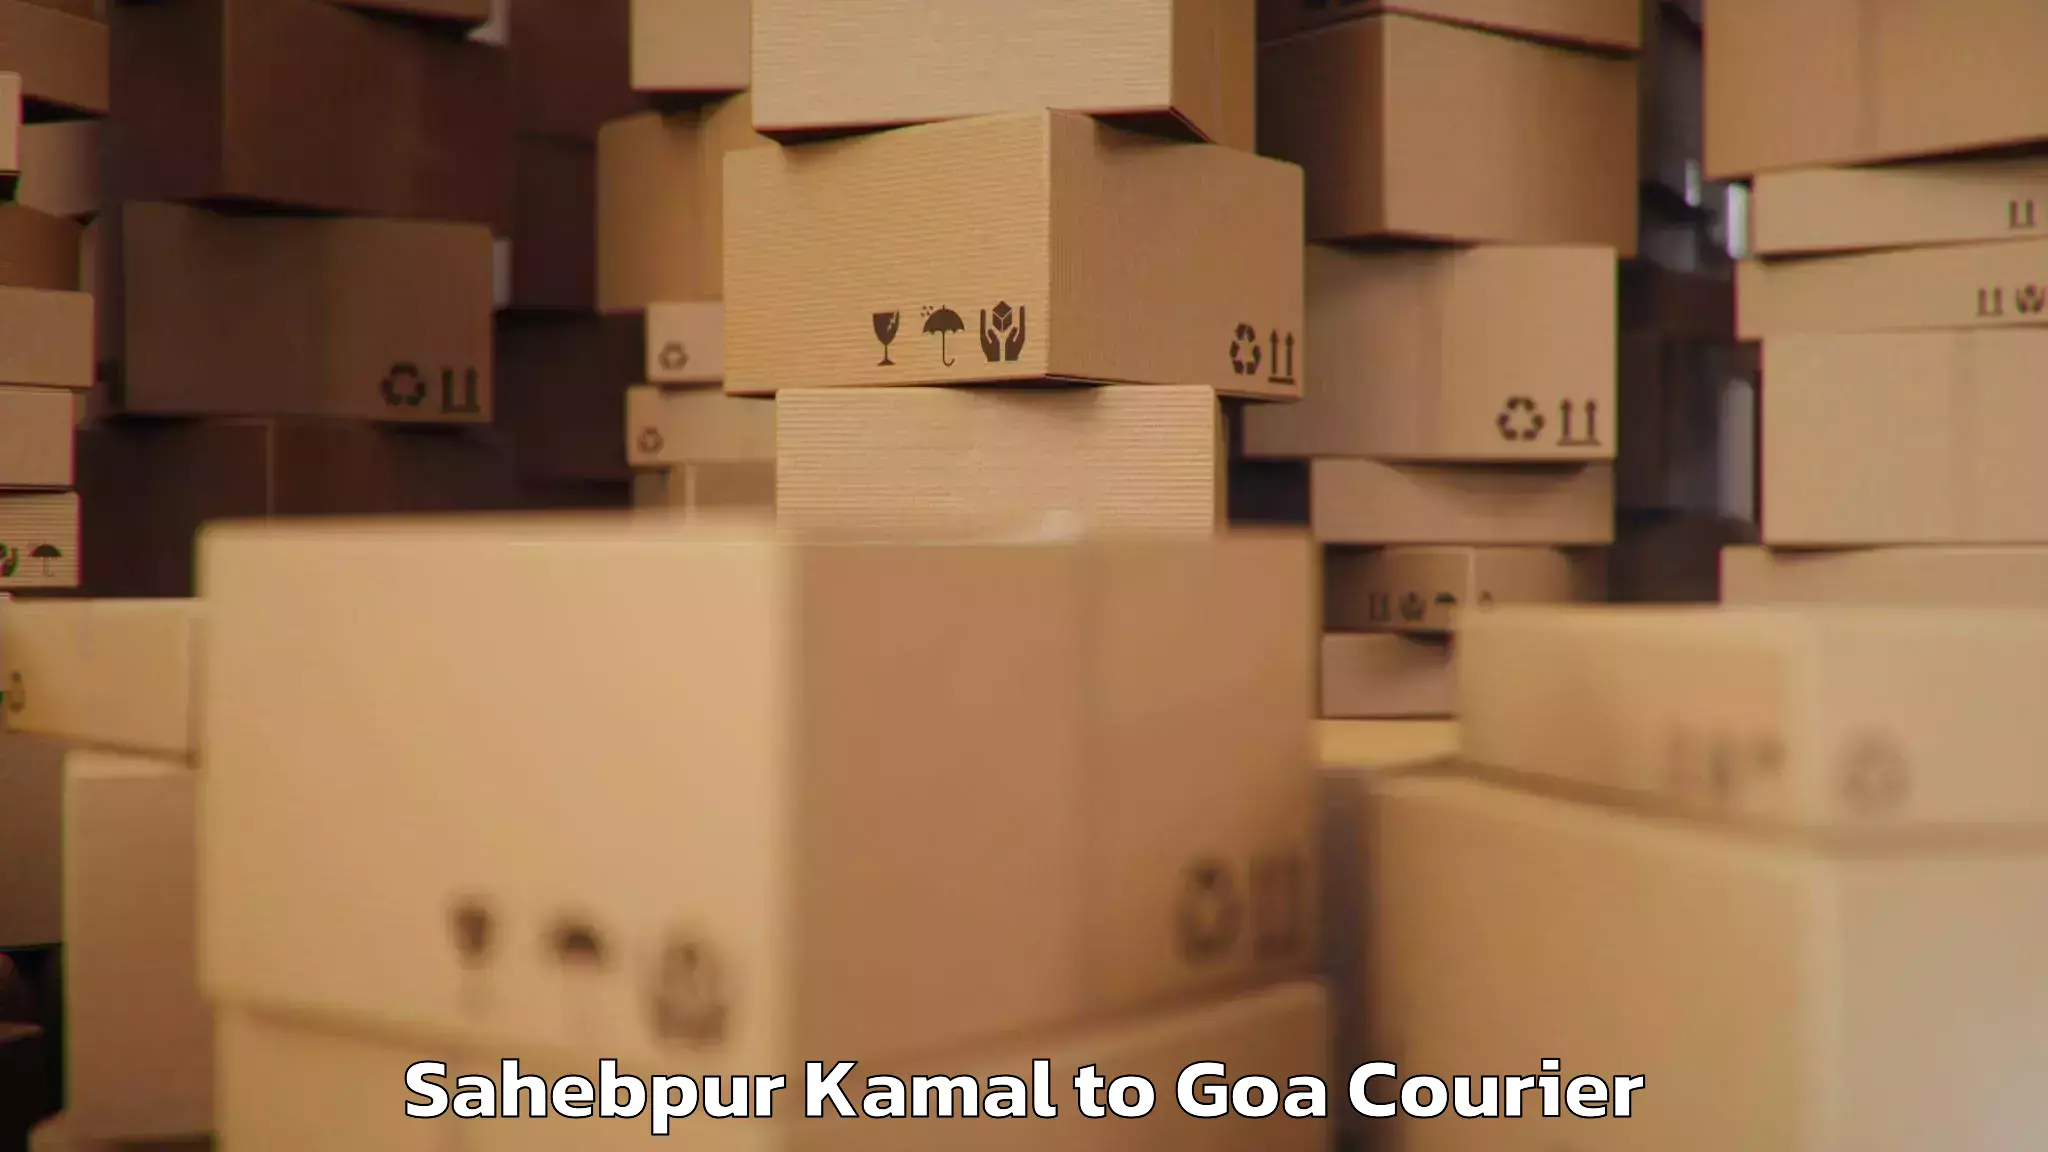 Customized luggage delivery Sahebpur Kamal to Ponda